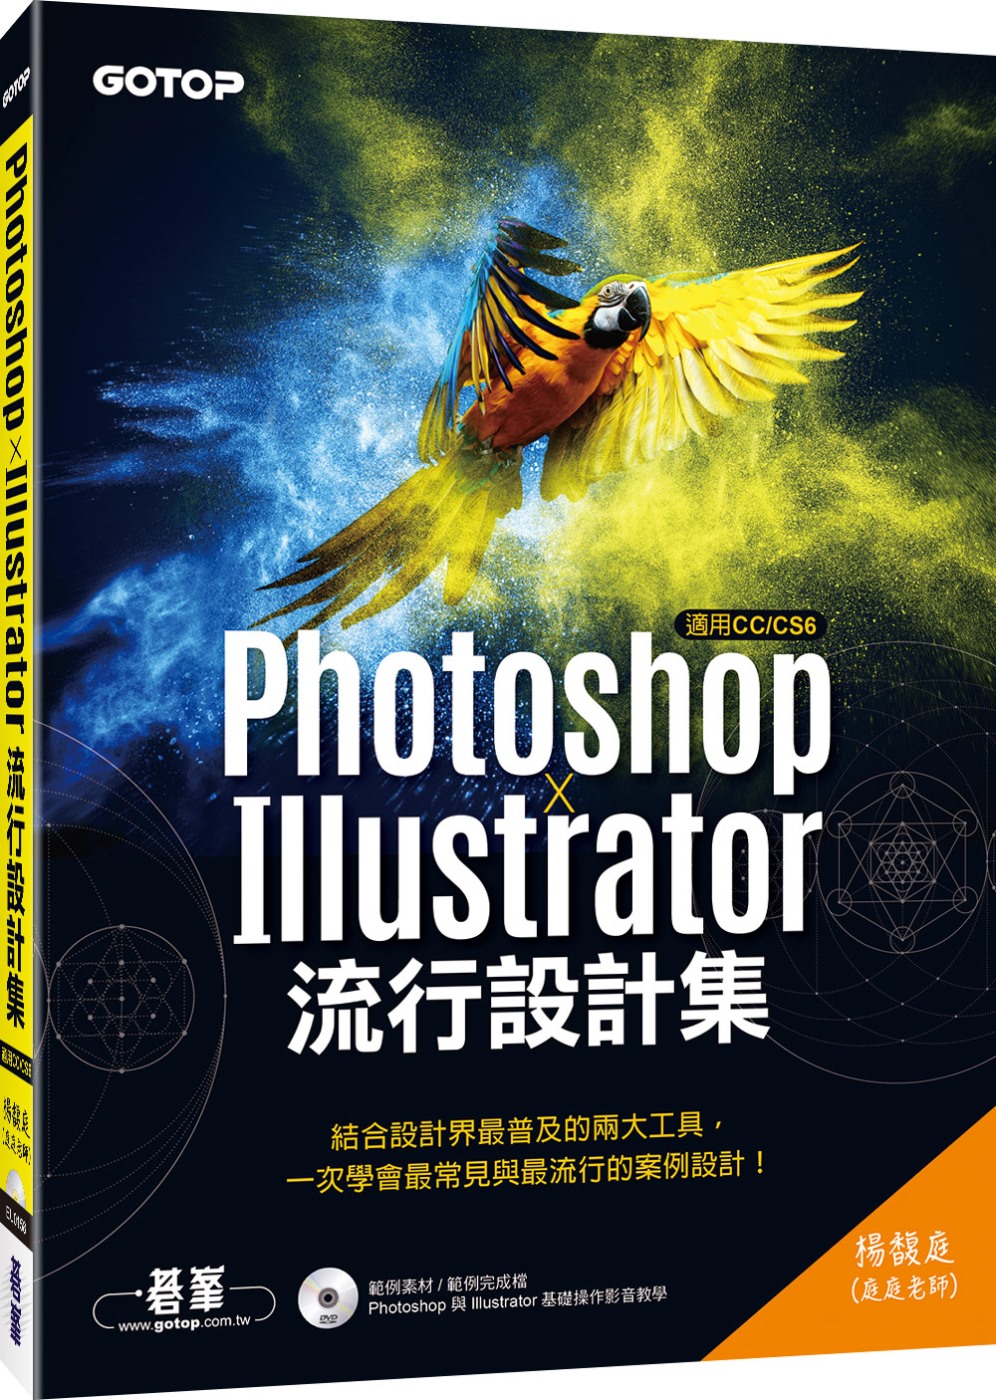 Photoshop X Illustrator流行設計集(適用CC／CS6)